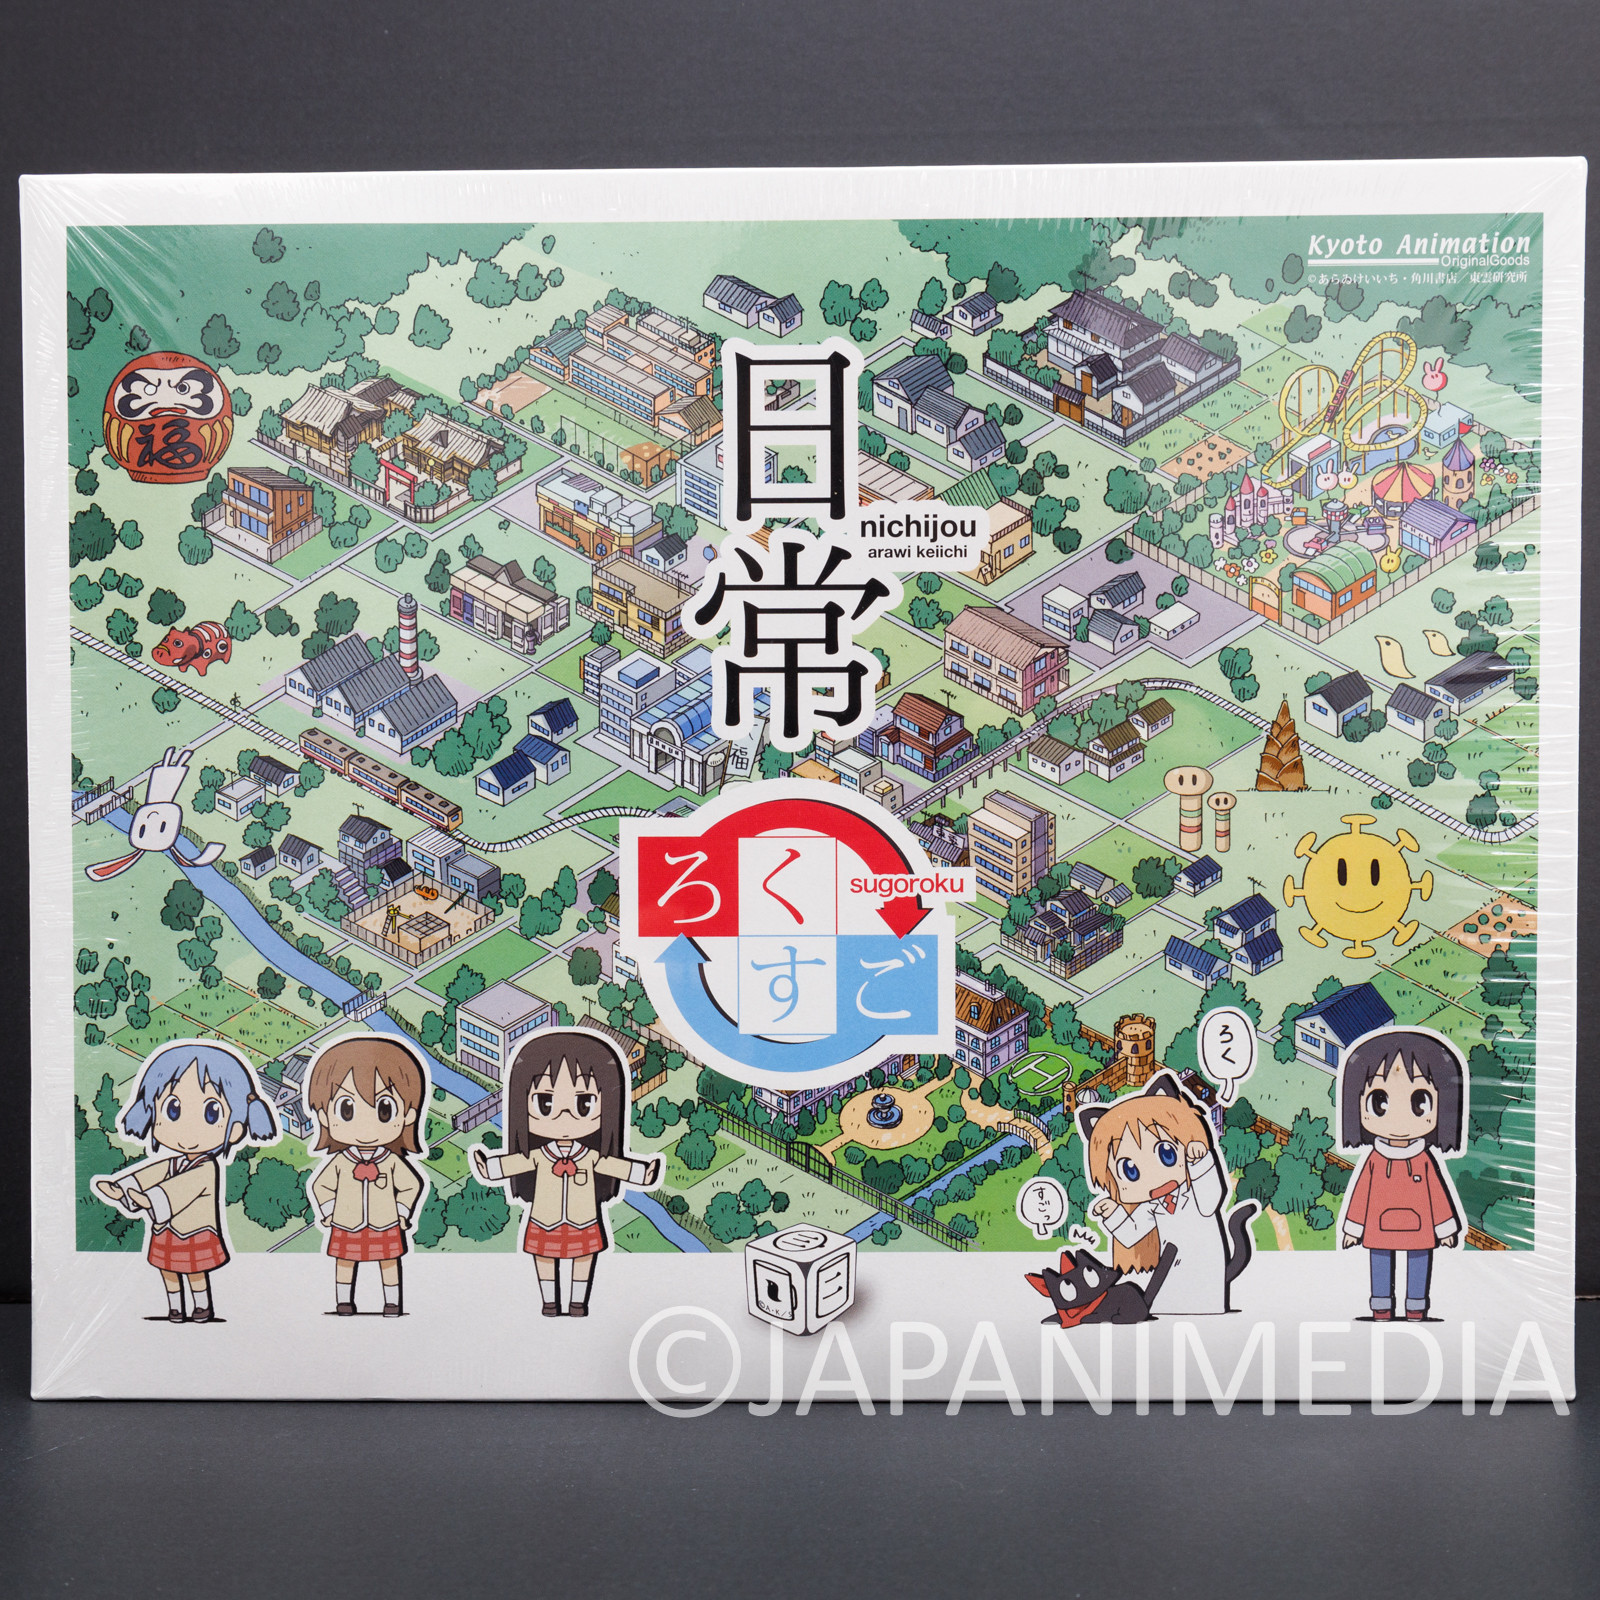 Nichijou Board Game Rokusugo Sugoroku Kyoto Animation KEIICHI ARAI